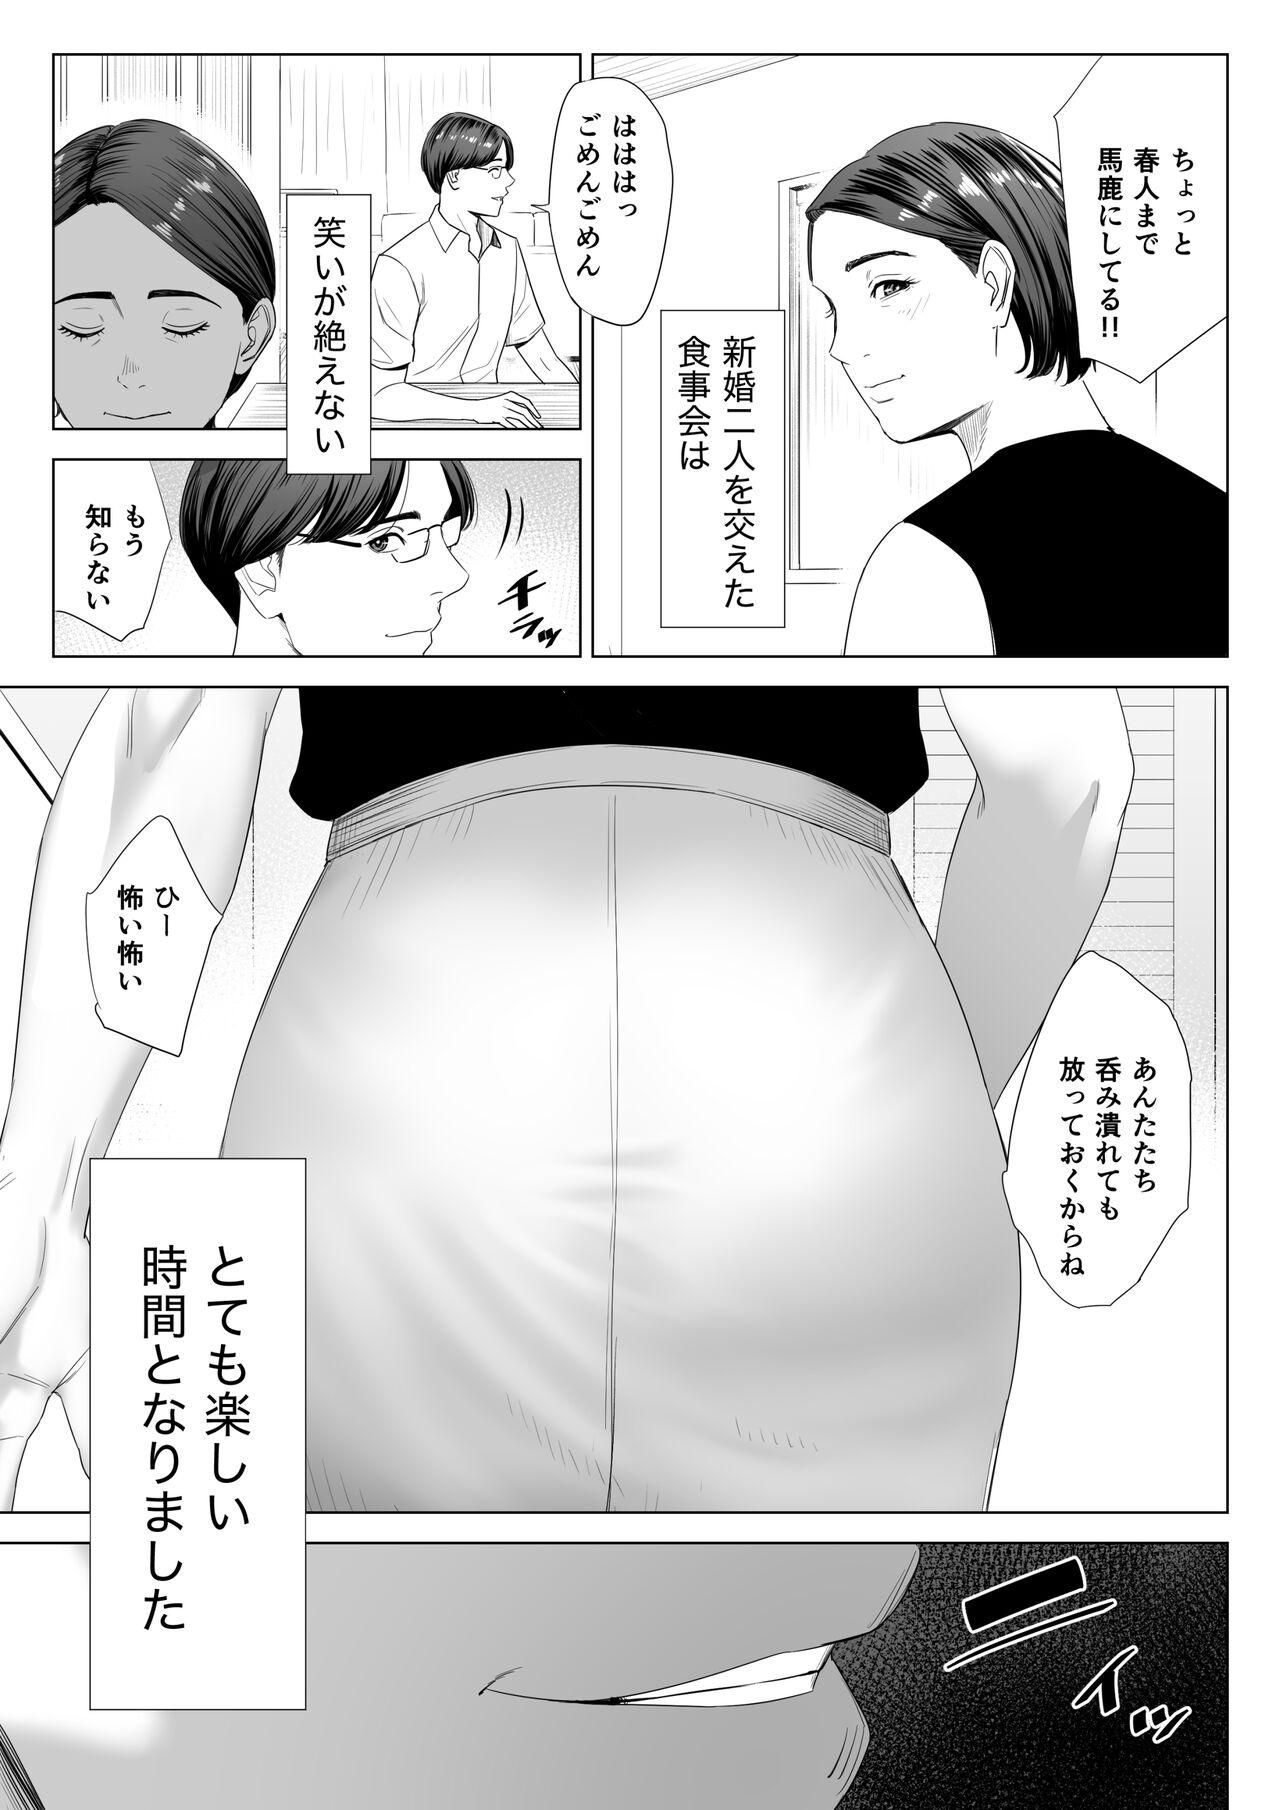 Friend Gibo no tsukaeru karada. - Original Fitness - Page 8